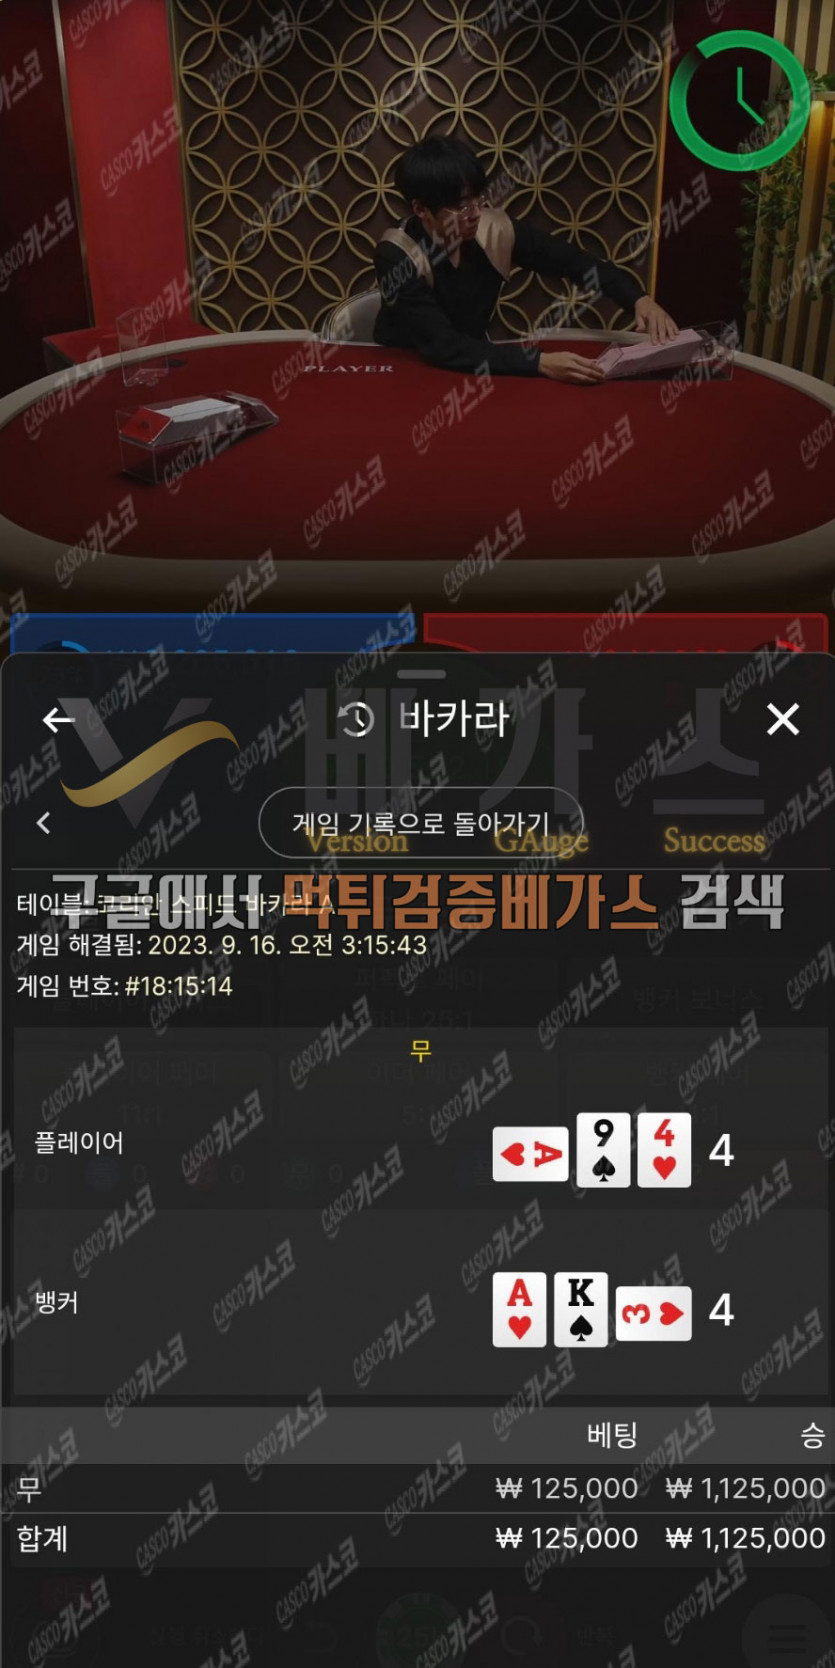 먹튀검증 완료 먹튀사이트-아트카지노[ahja3.com] 바카라 베팅내역1 먹튀검증 증거자료3